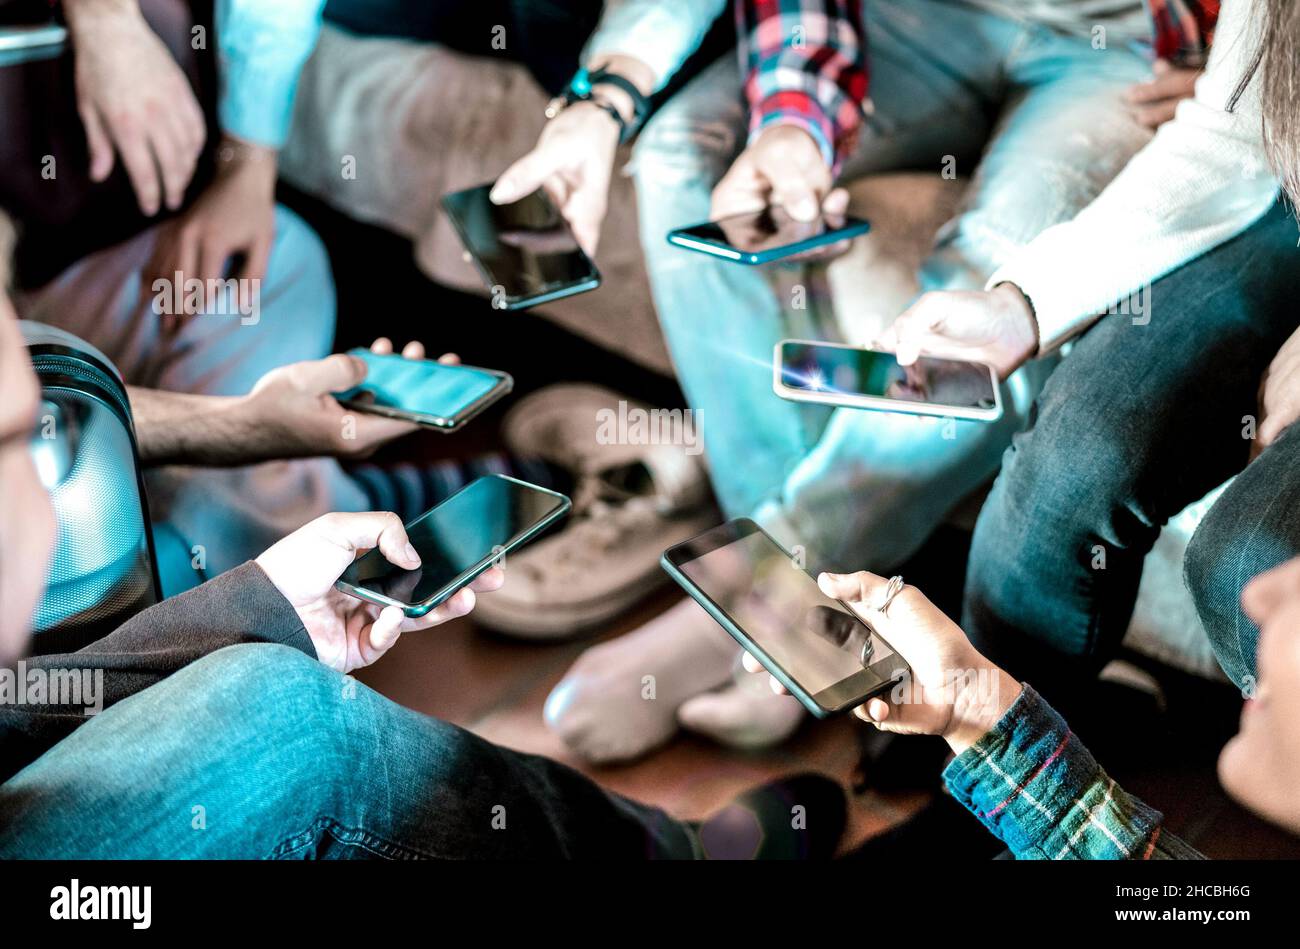 Freunde, die Spaß mit dem Handy zu Hause haben - Nahaufnahme von Menschen Hände teilen Fotos auf Social-Media-Netzwerk mit dem Smartphone Stockfoto